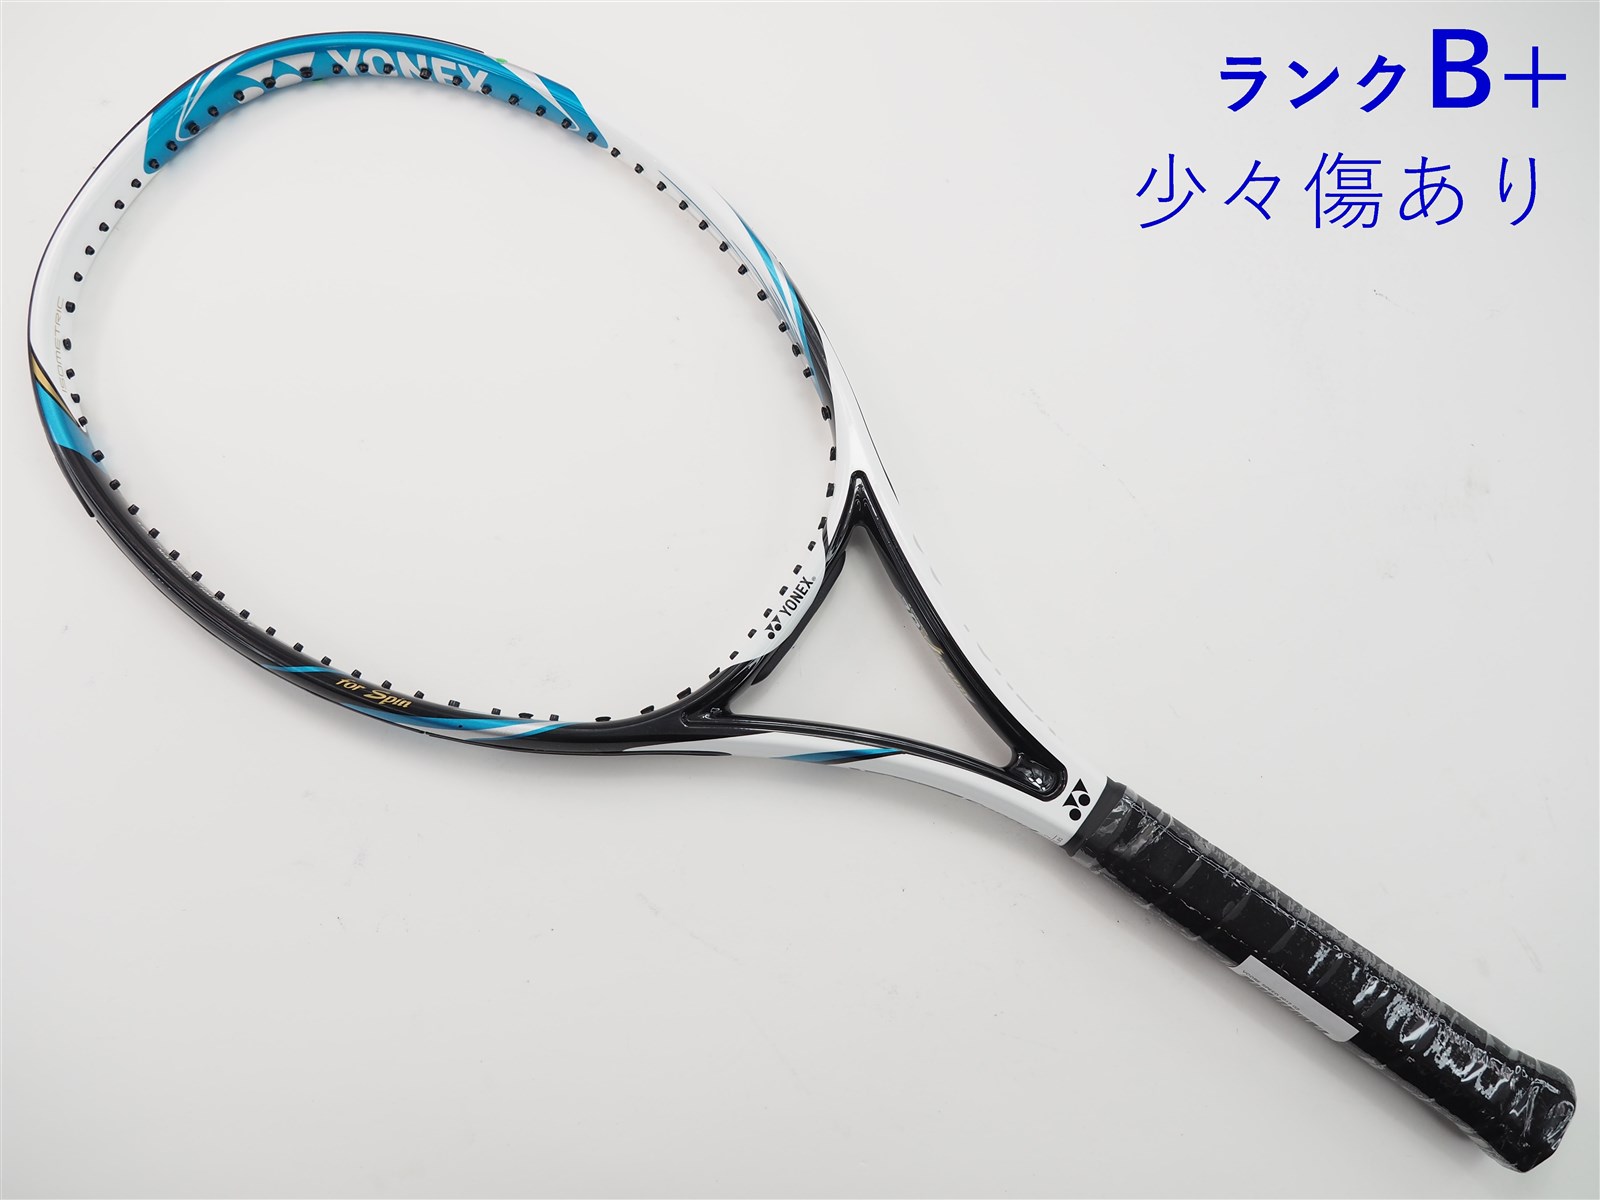 テニスラケット ヨネックス ブイコア エックスアイ 100 2012年モデル (LG1)YONEX VCORE Xi 100 2012ガット無しグリップサイズ